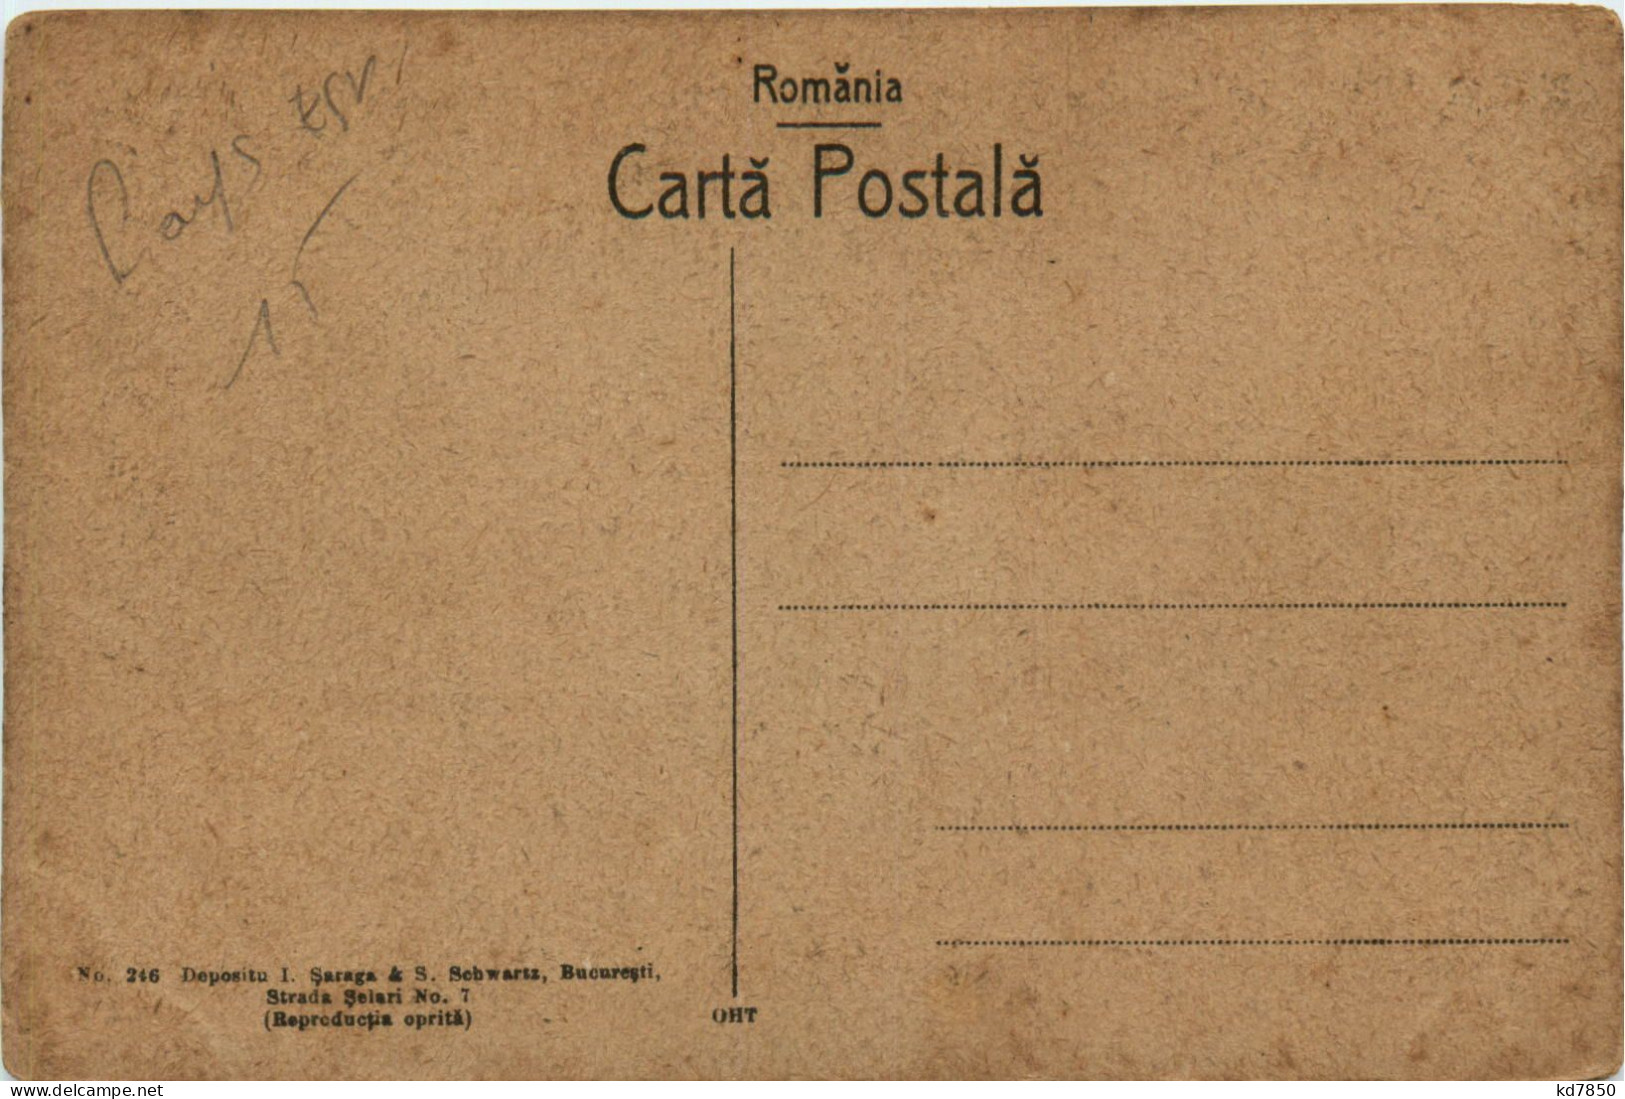 Rumänische Volkstracht - Roumanie